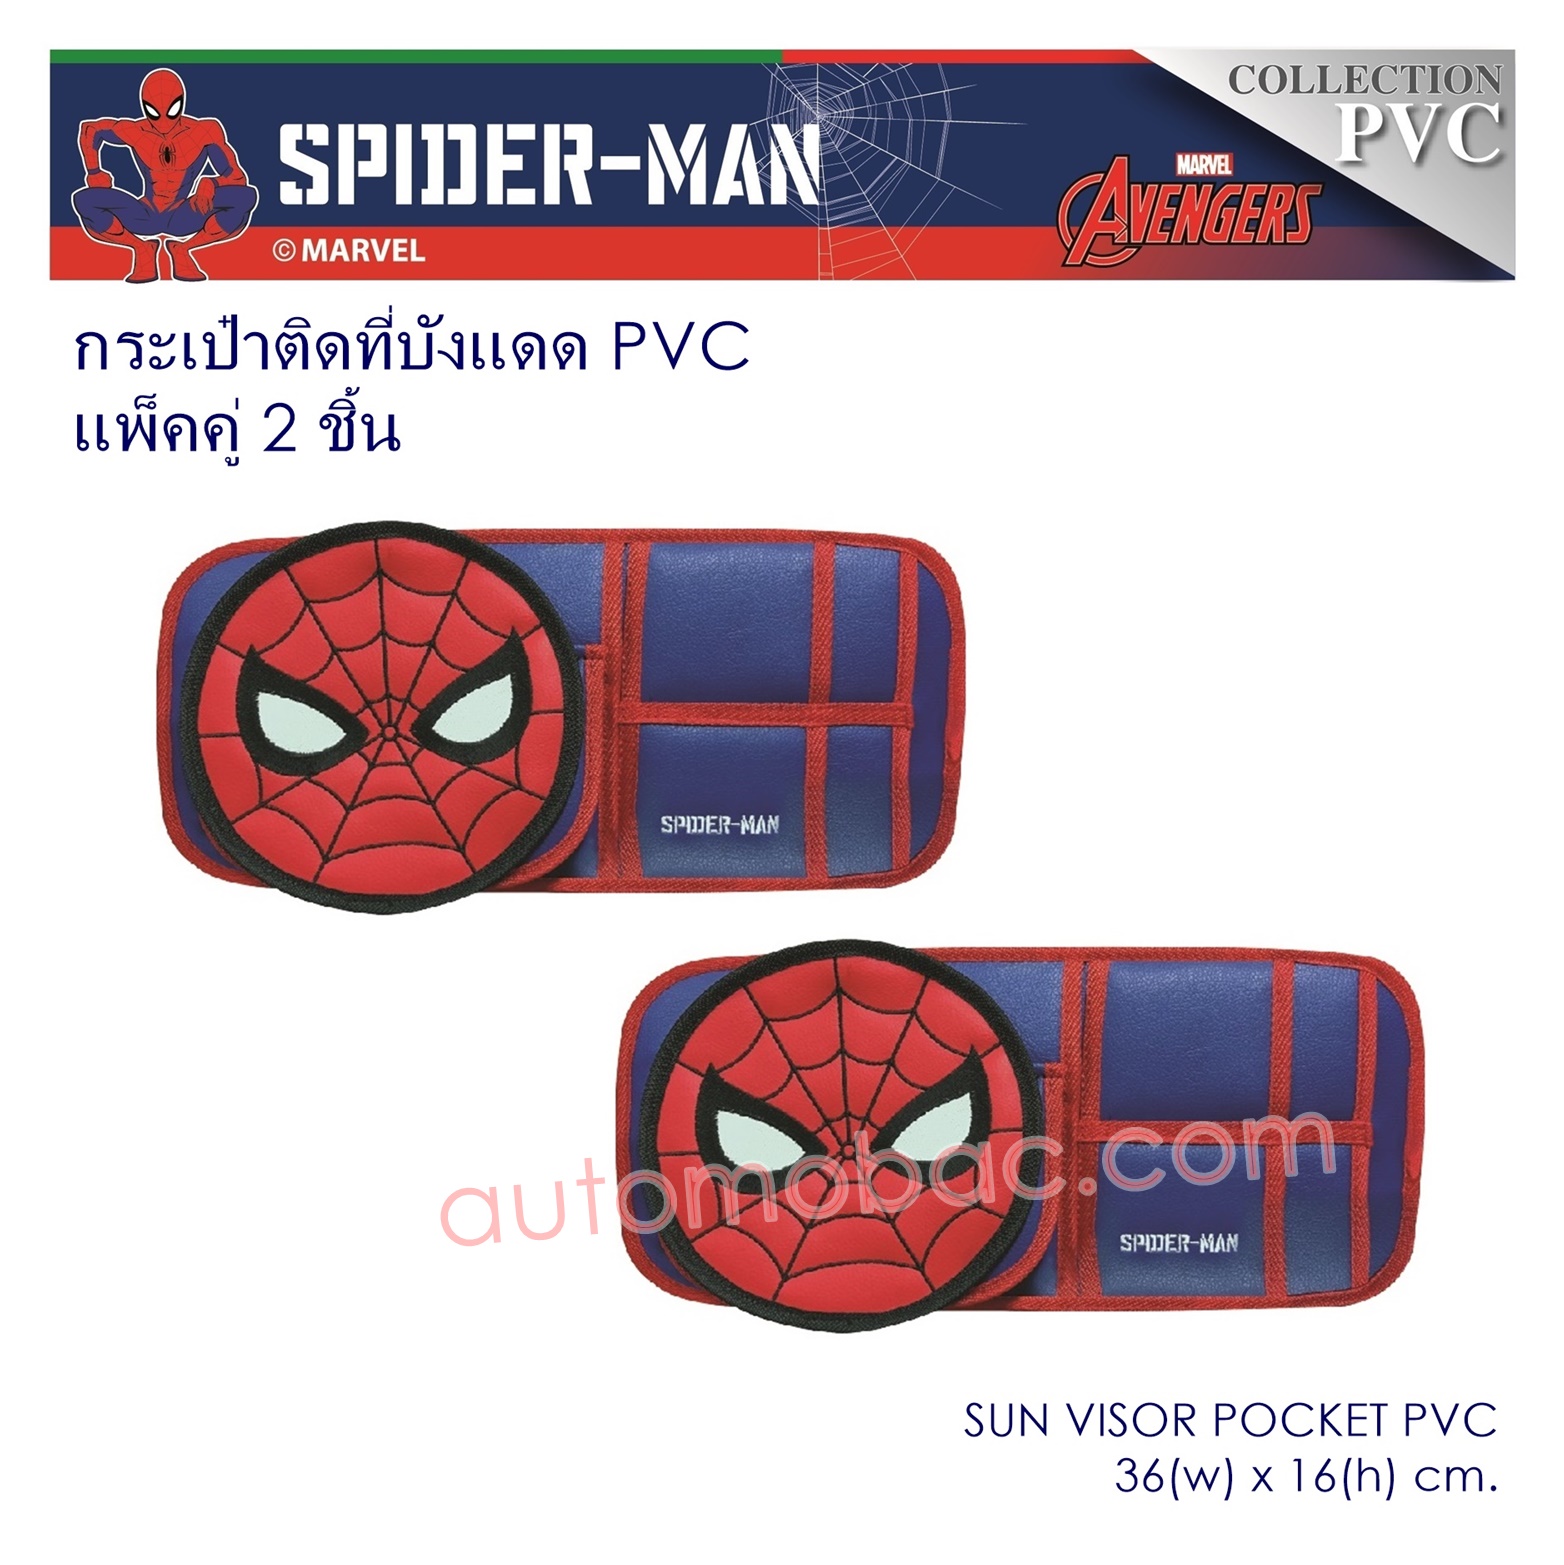 Spider-man กระเป๋าติดที่บังแดด 2 ชิ้น หนัง PVC ช่วยจัดระเบียบสิ่งของ หยิบใช้สะดวก ลิขสิทธิ์แท้